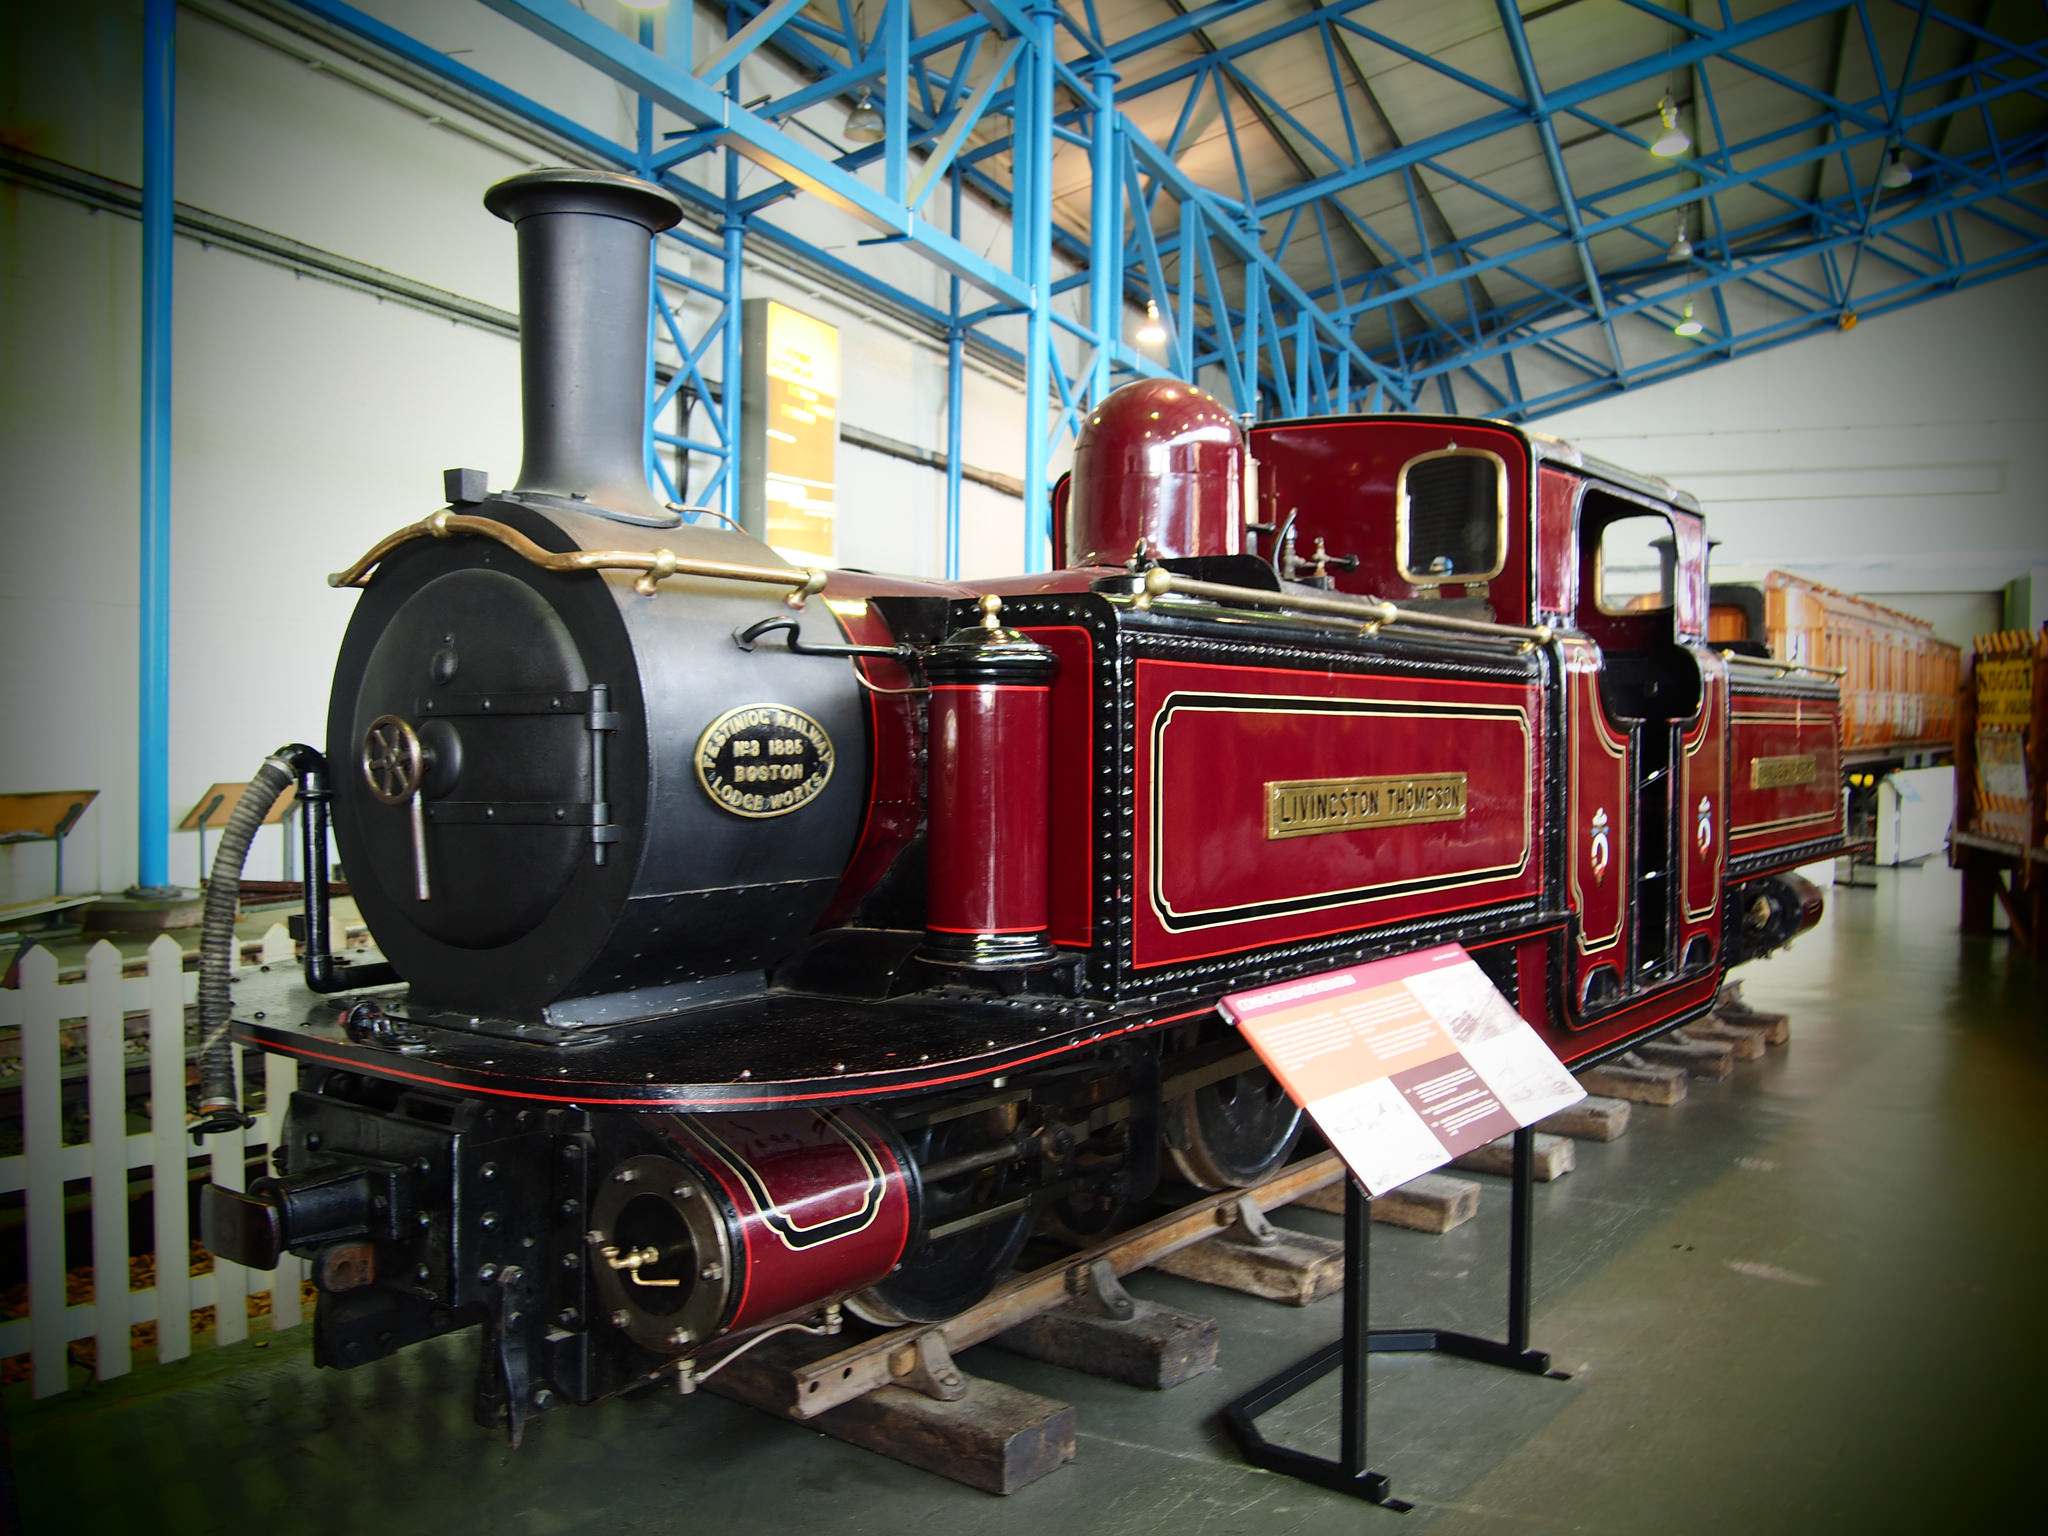 national railway museum7 National Railway Museum in York